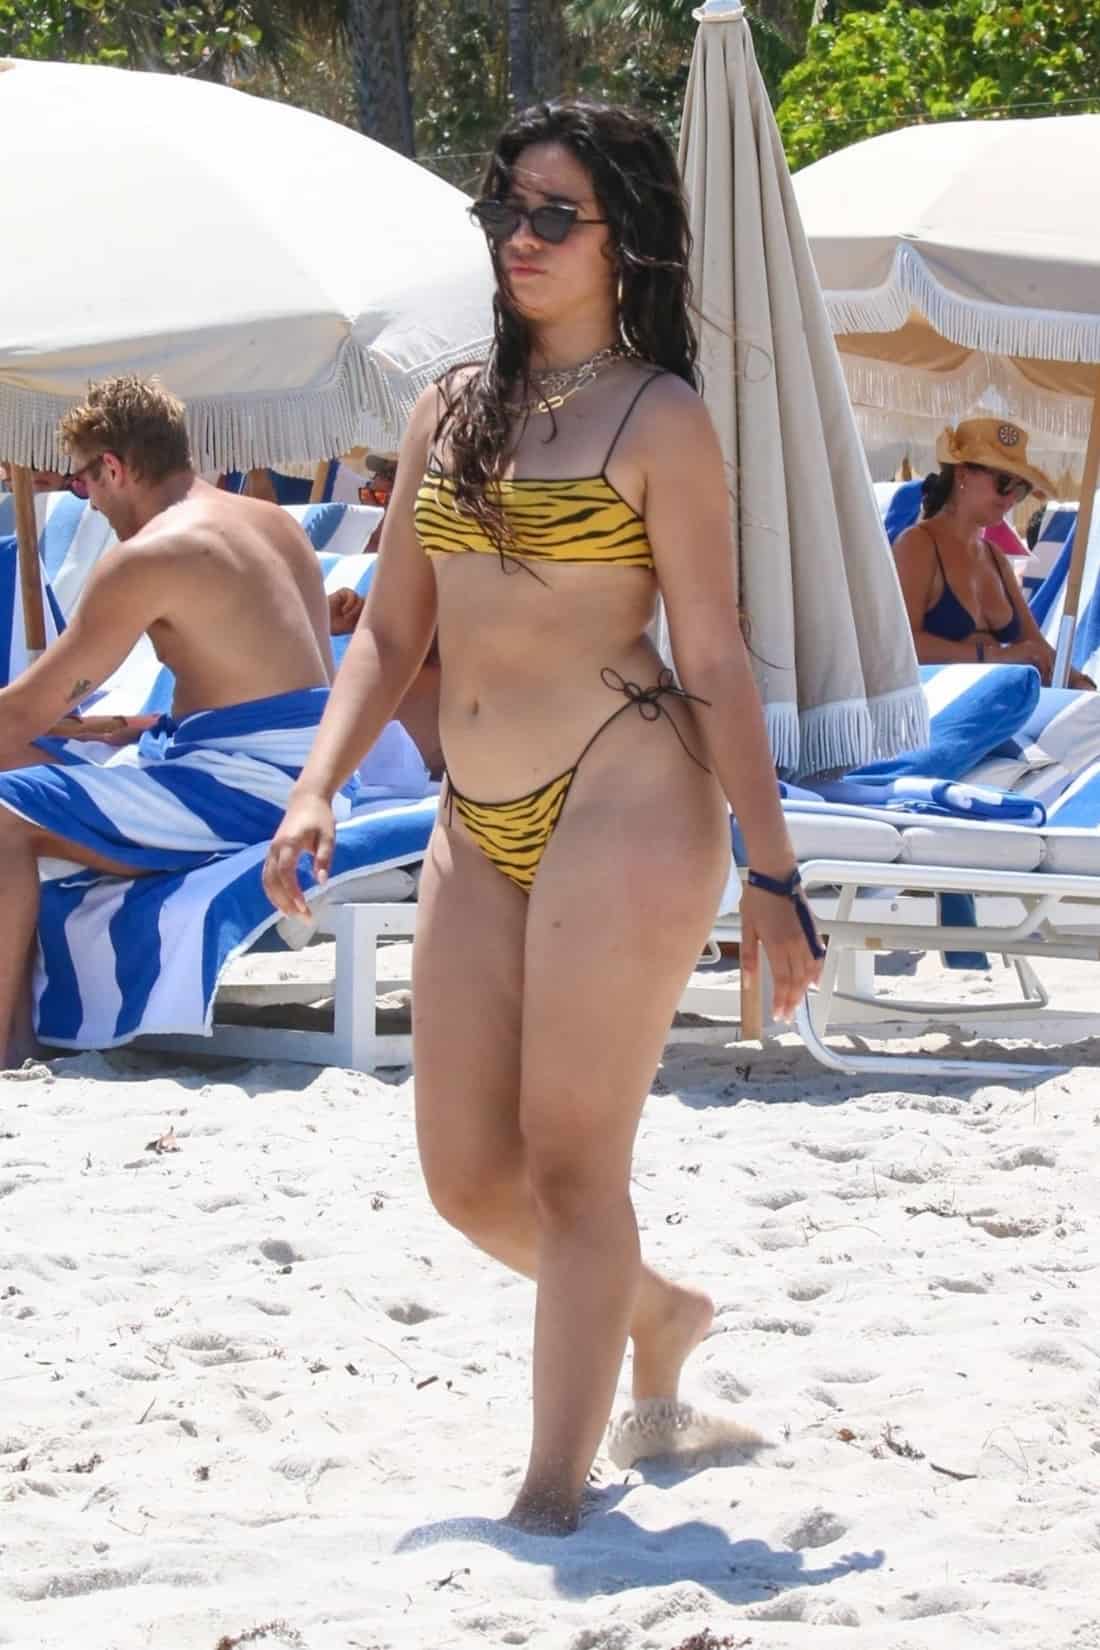 Camila Cabello Shows Off Her Figure in a Tiger-stripe Micro Bikini in Miami Beach